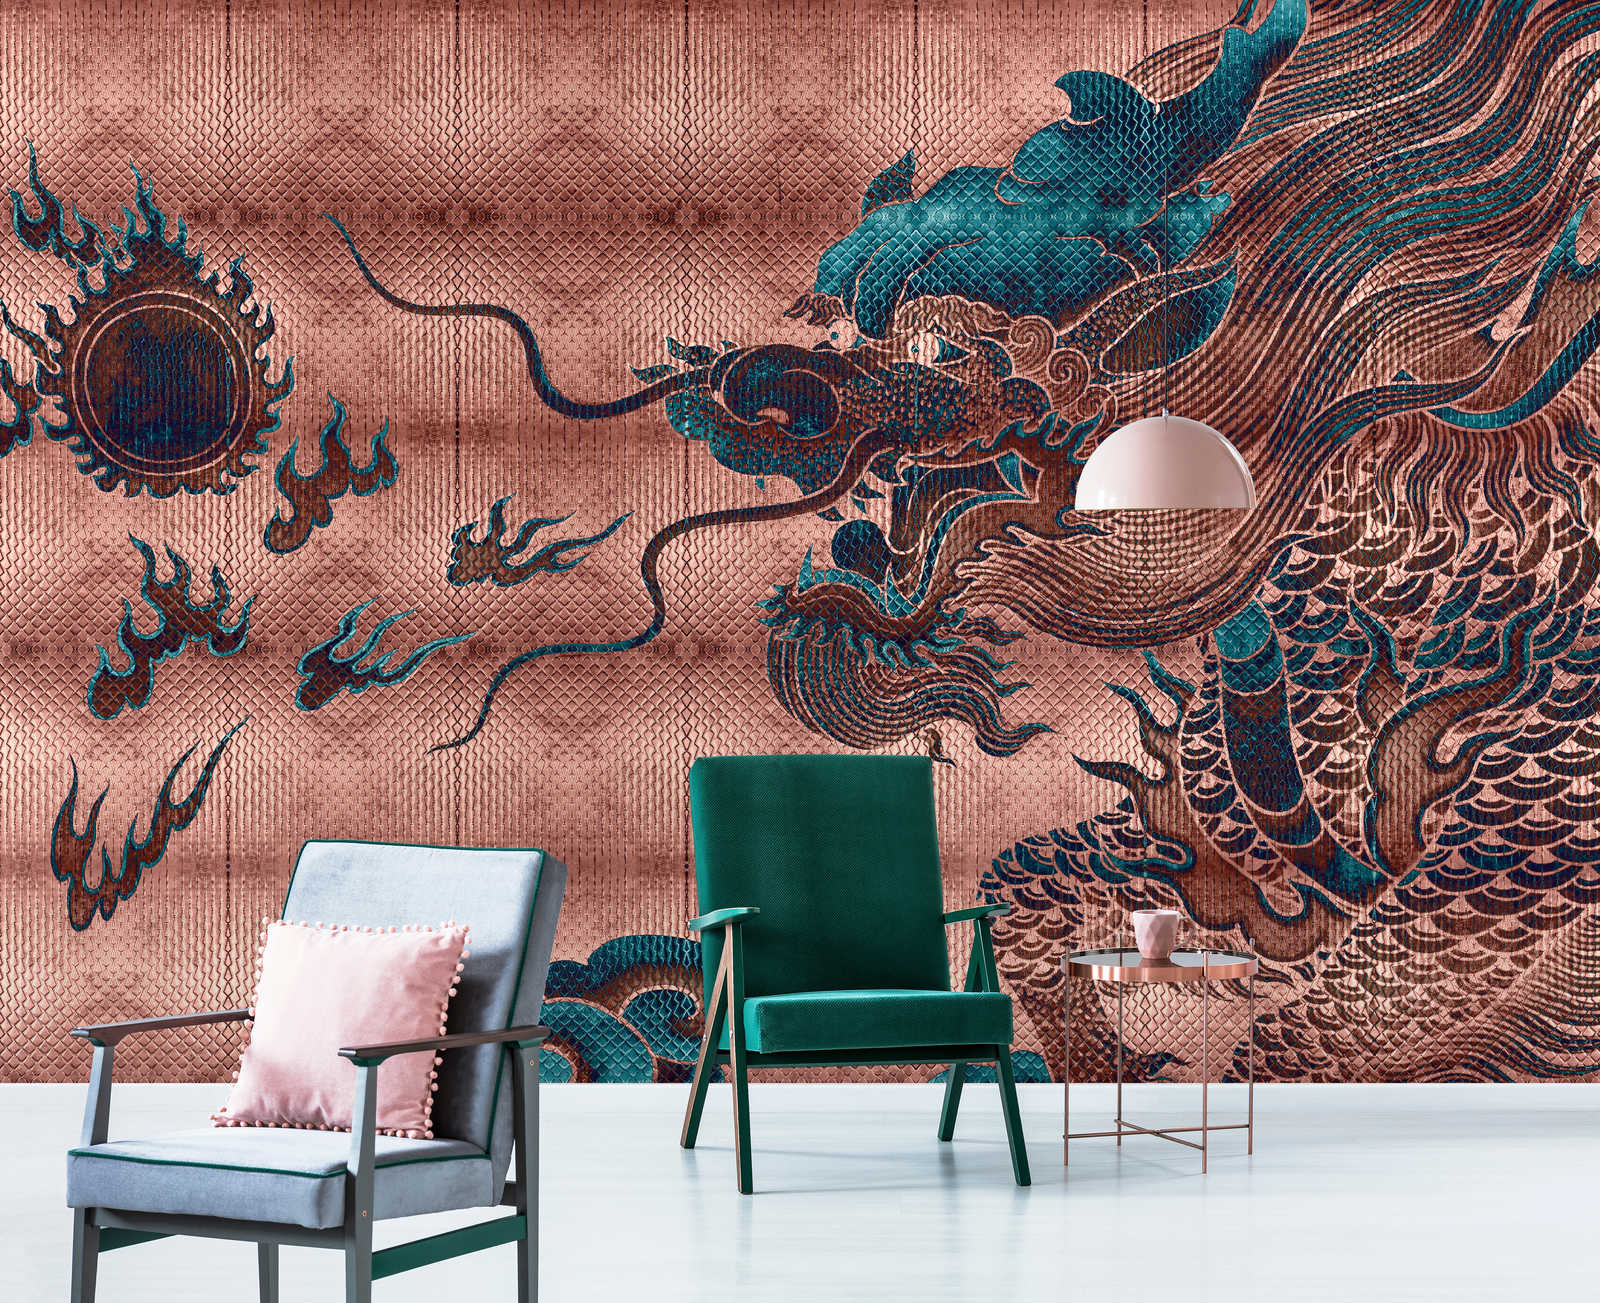             Shenzen 1 - Muurschildering Dragon Asian Syle met metallic kleuren
        